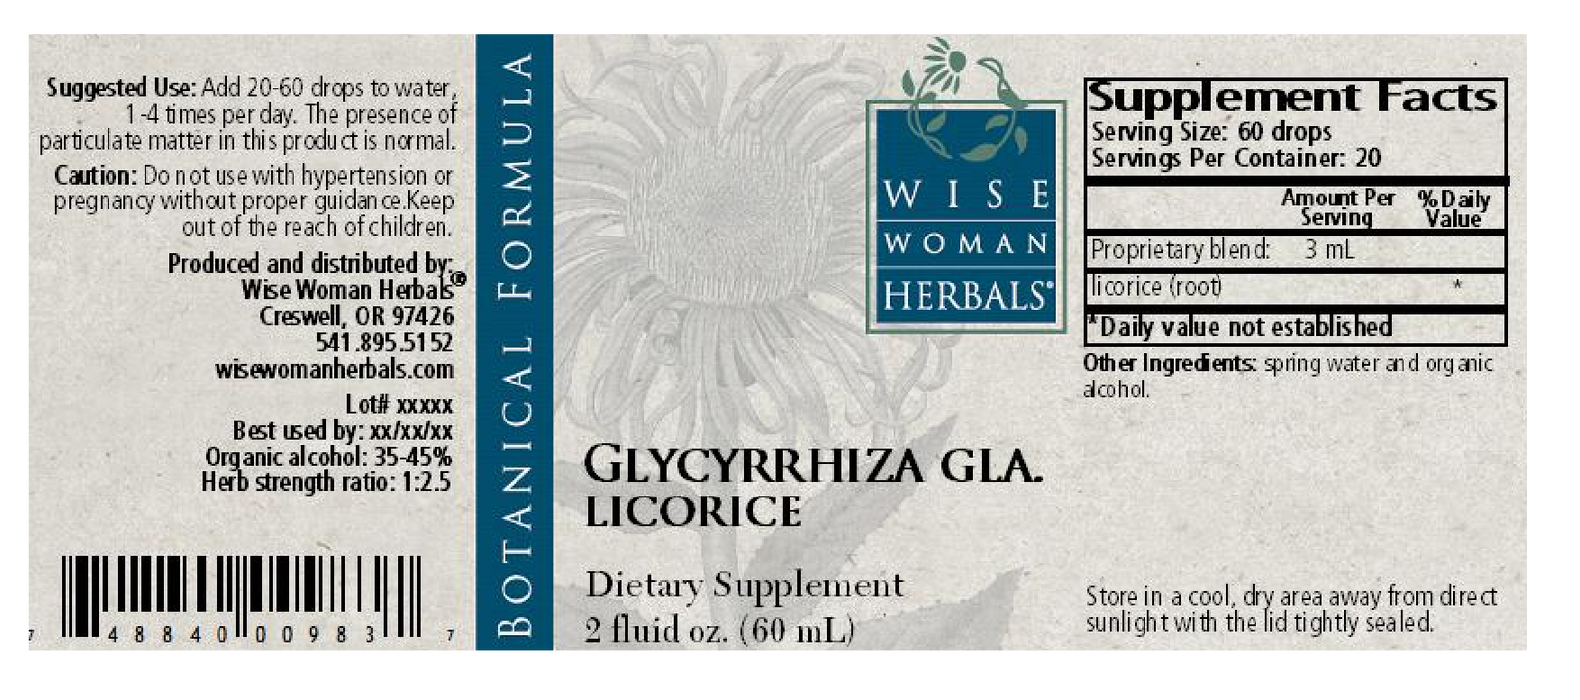 Wise Woman Herbals Glycyrrhiza/licorice